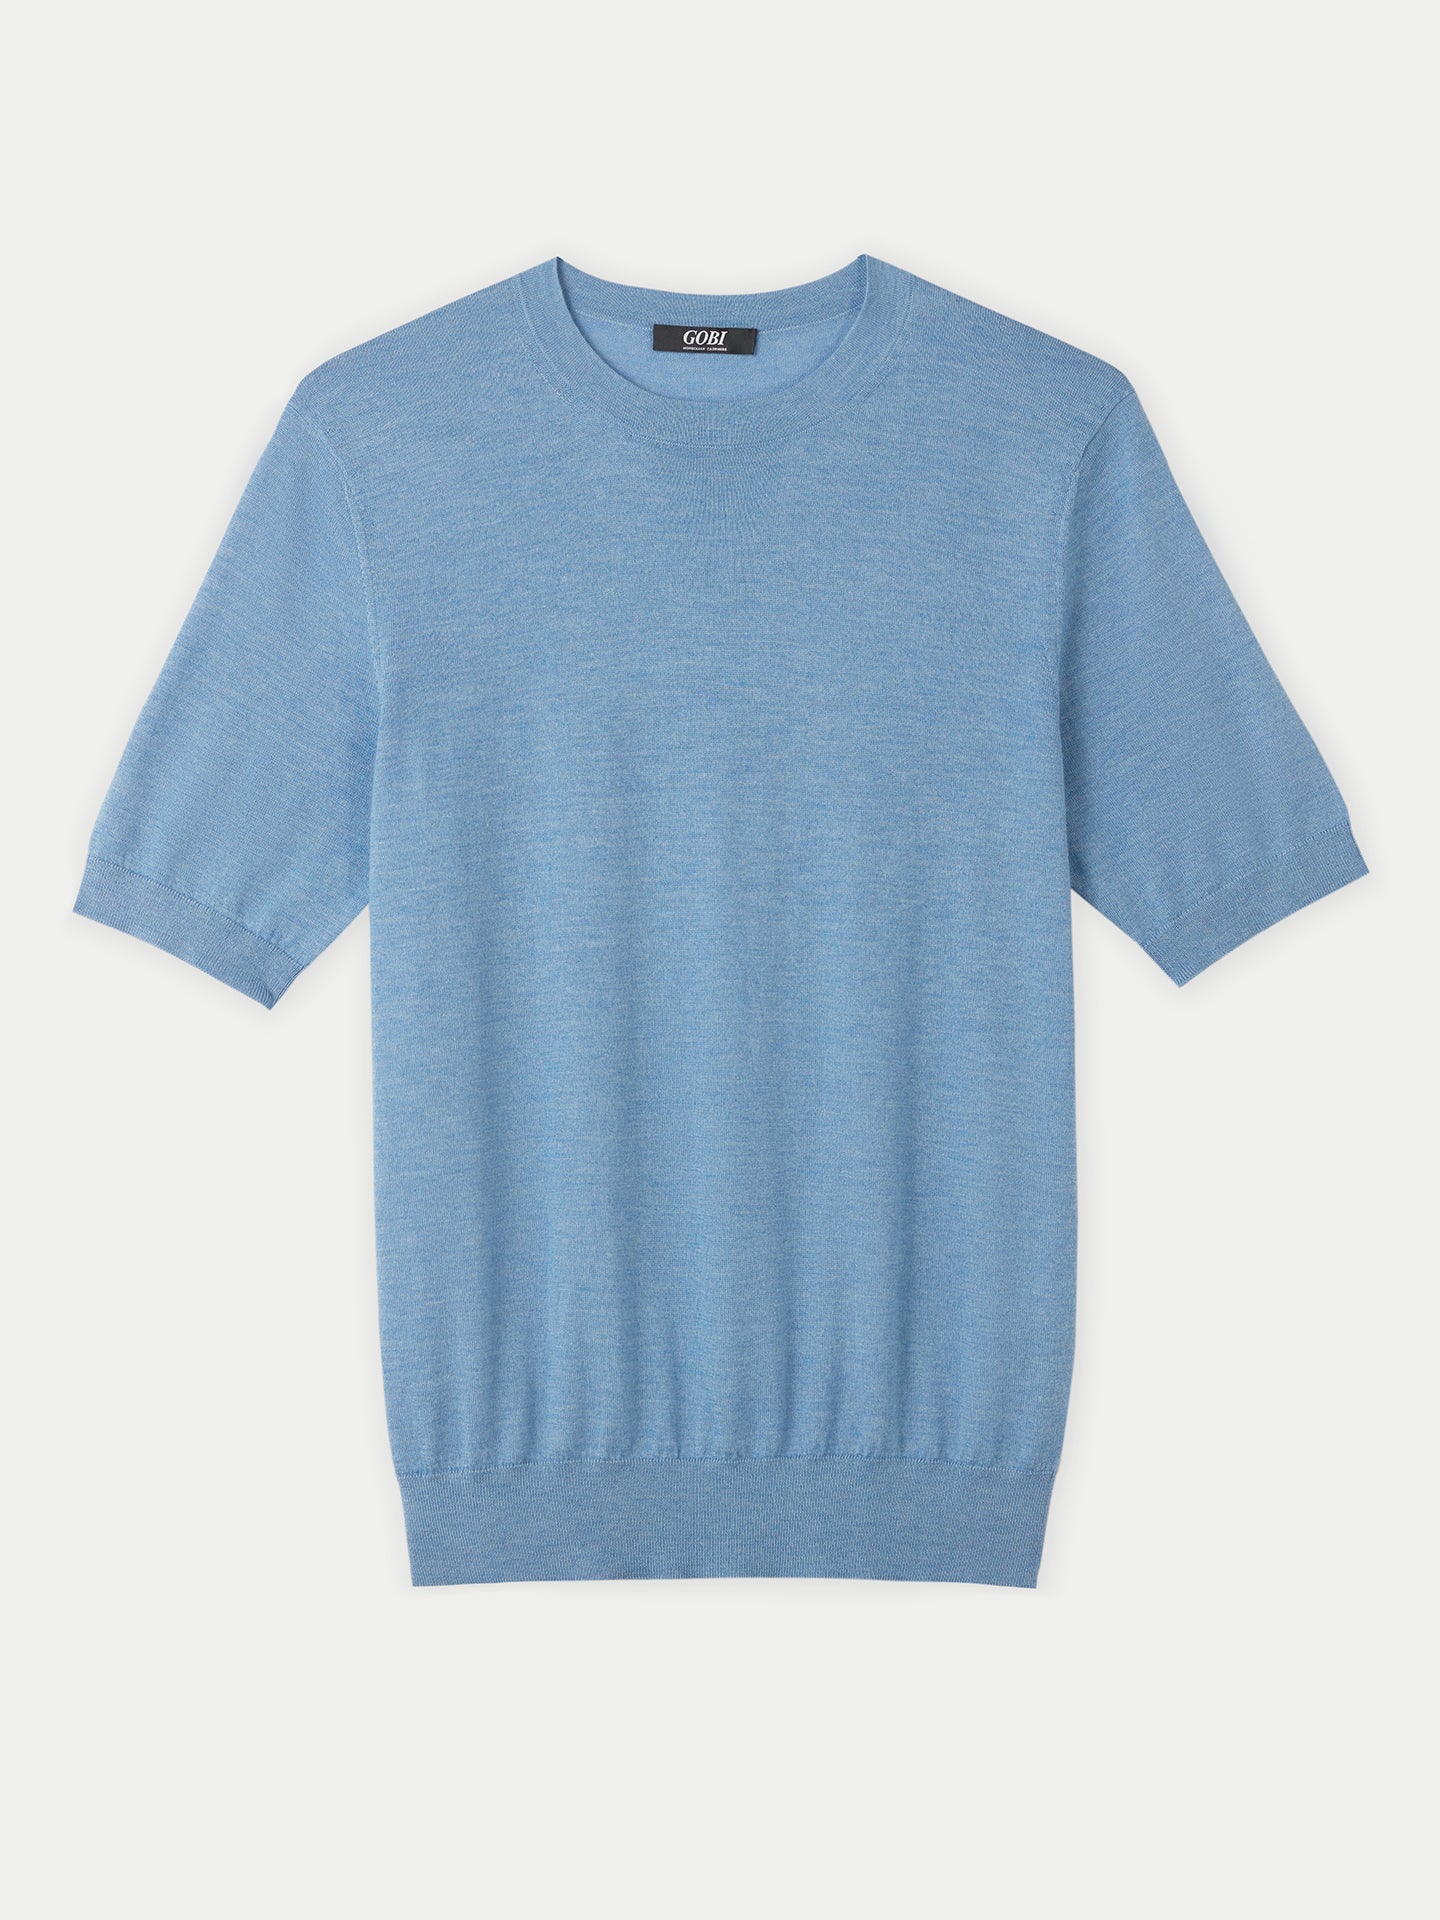 Herren-T-Shirt aus Seide und Kaschmir Blau - Gobi Cashmere